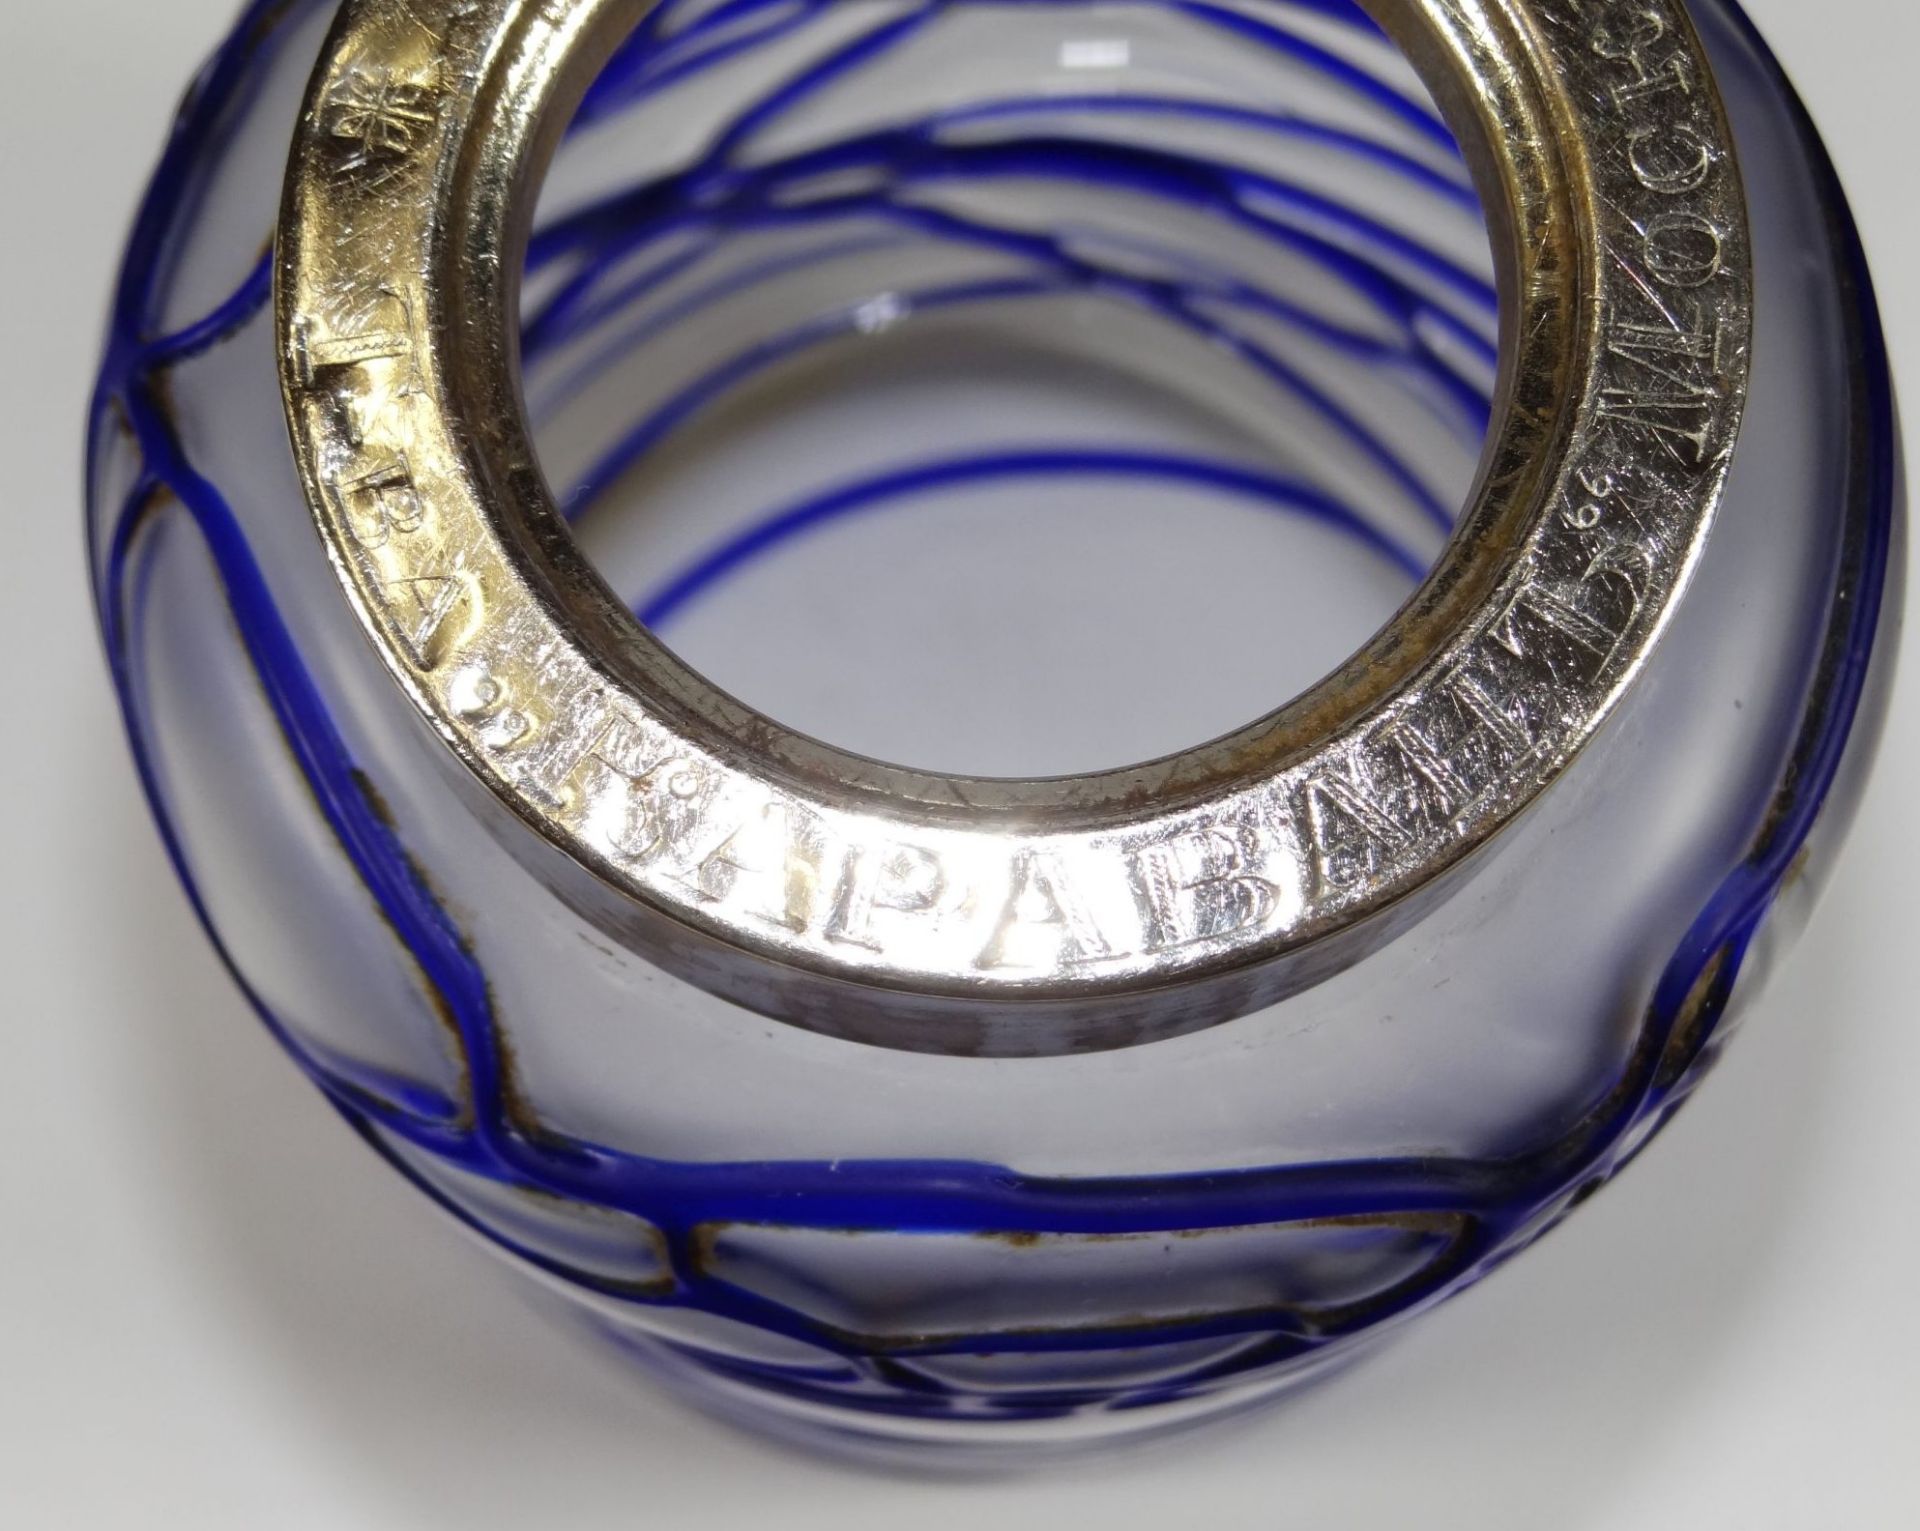 Milchglasdose mit aufgelegten blauen Fäden, Metallmontur kyrillisch beschriftet, H-15 cm, D-8,5 - Bild 5 aus 7